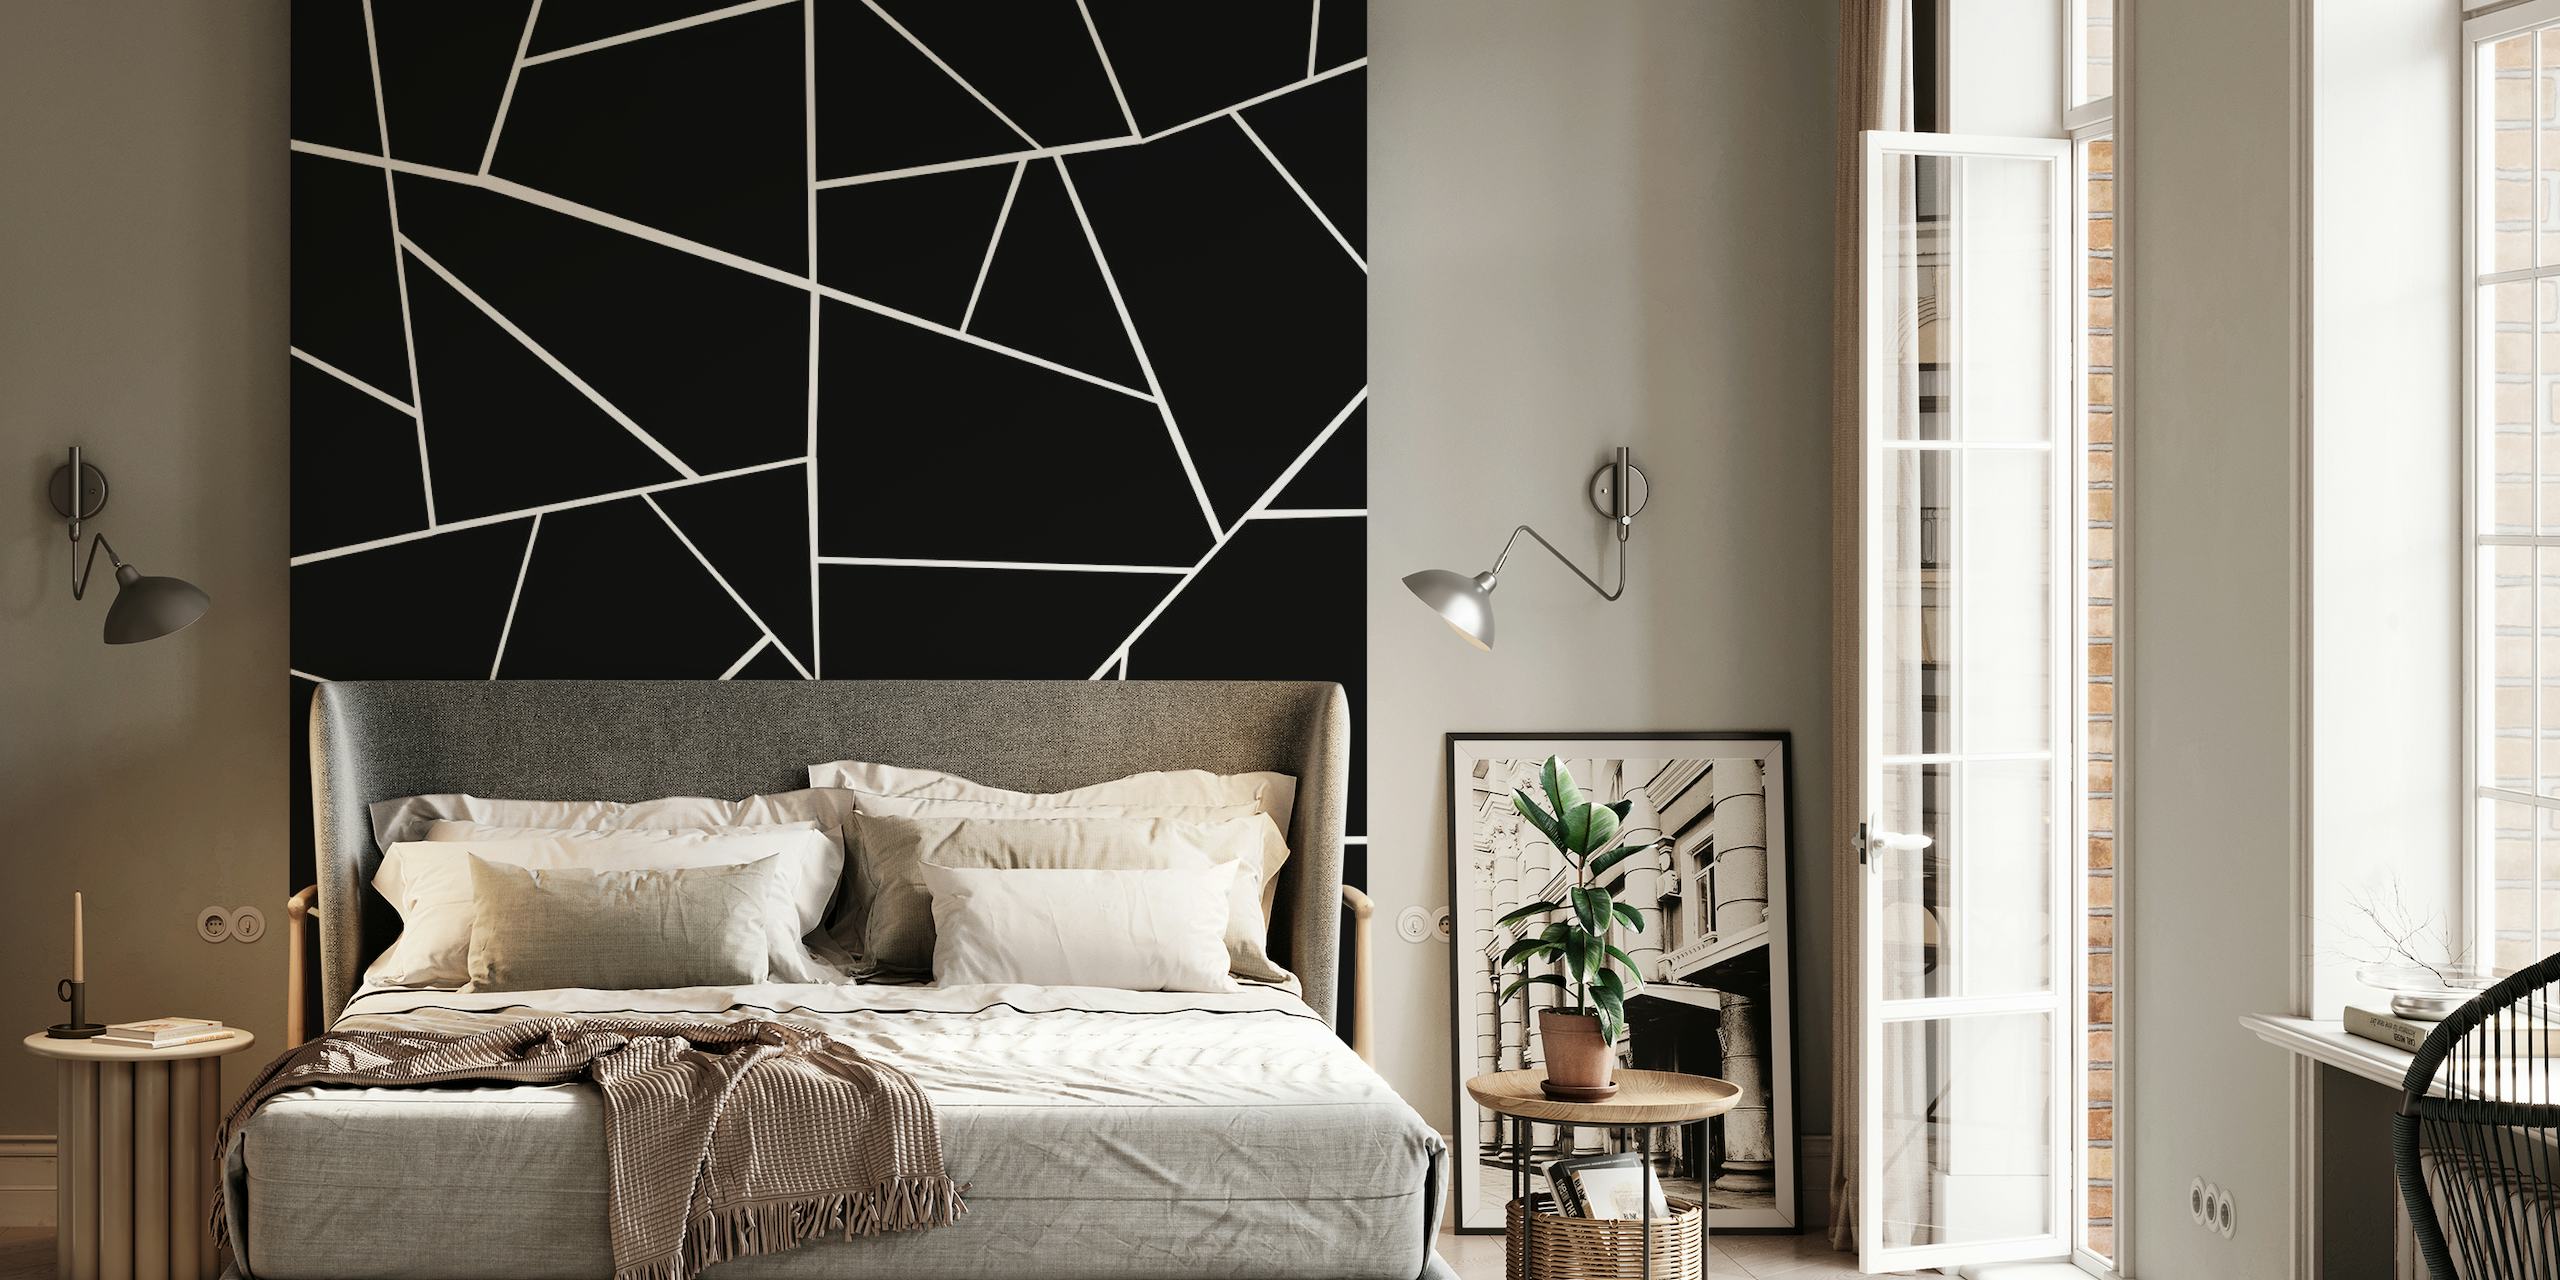 Sort og hvidt geometrisk mønster vægmaleri med skarpe linjer og vinkler, der skaber et moderne look.